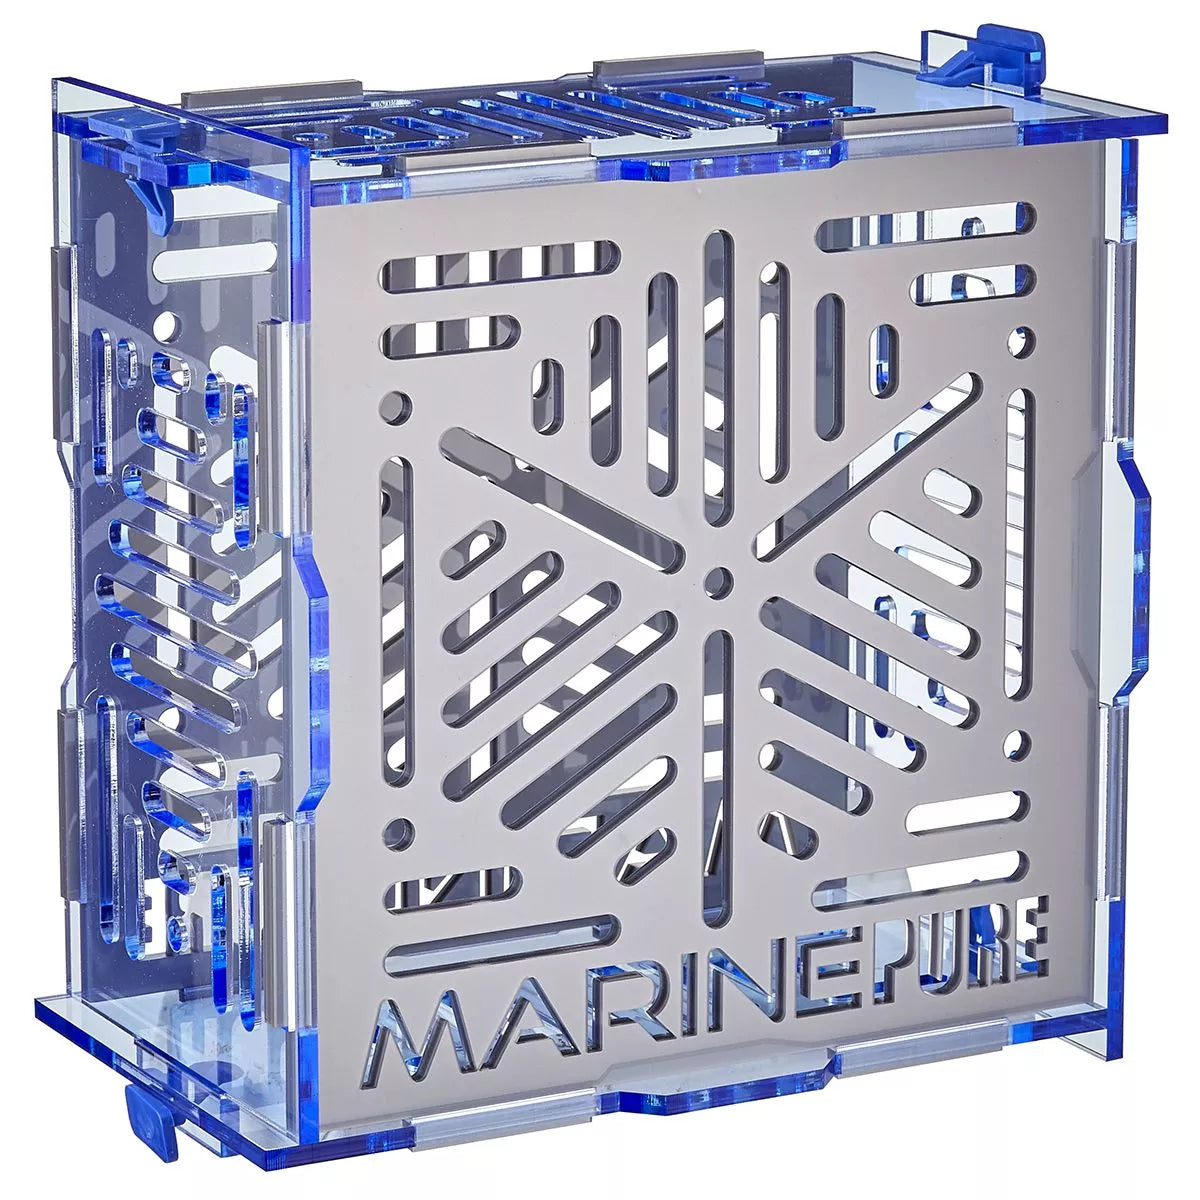 MarinePure Vault Biomedia Holder (MP357010)